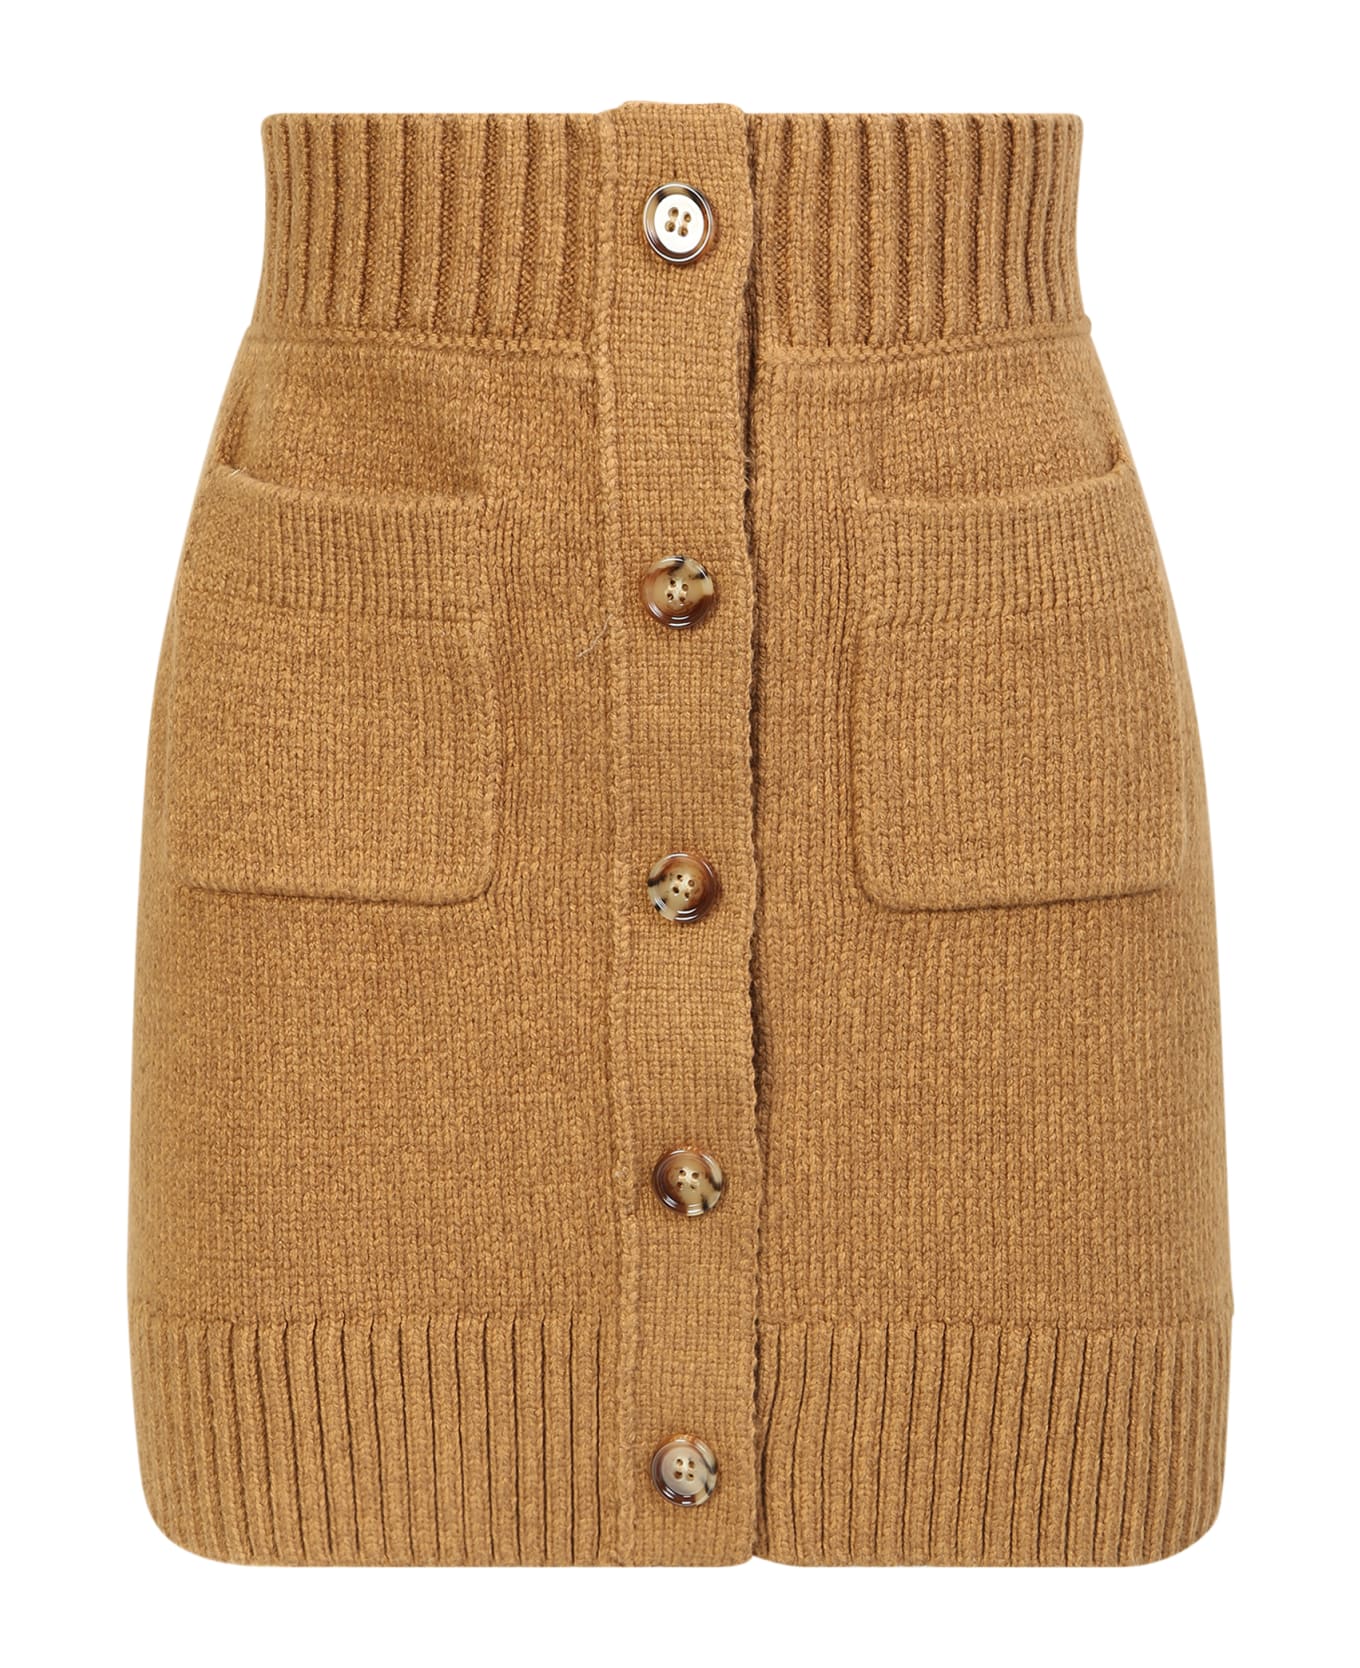 Burberry Knit Miniskirt - Beige スカート